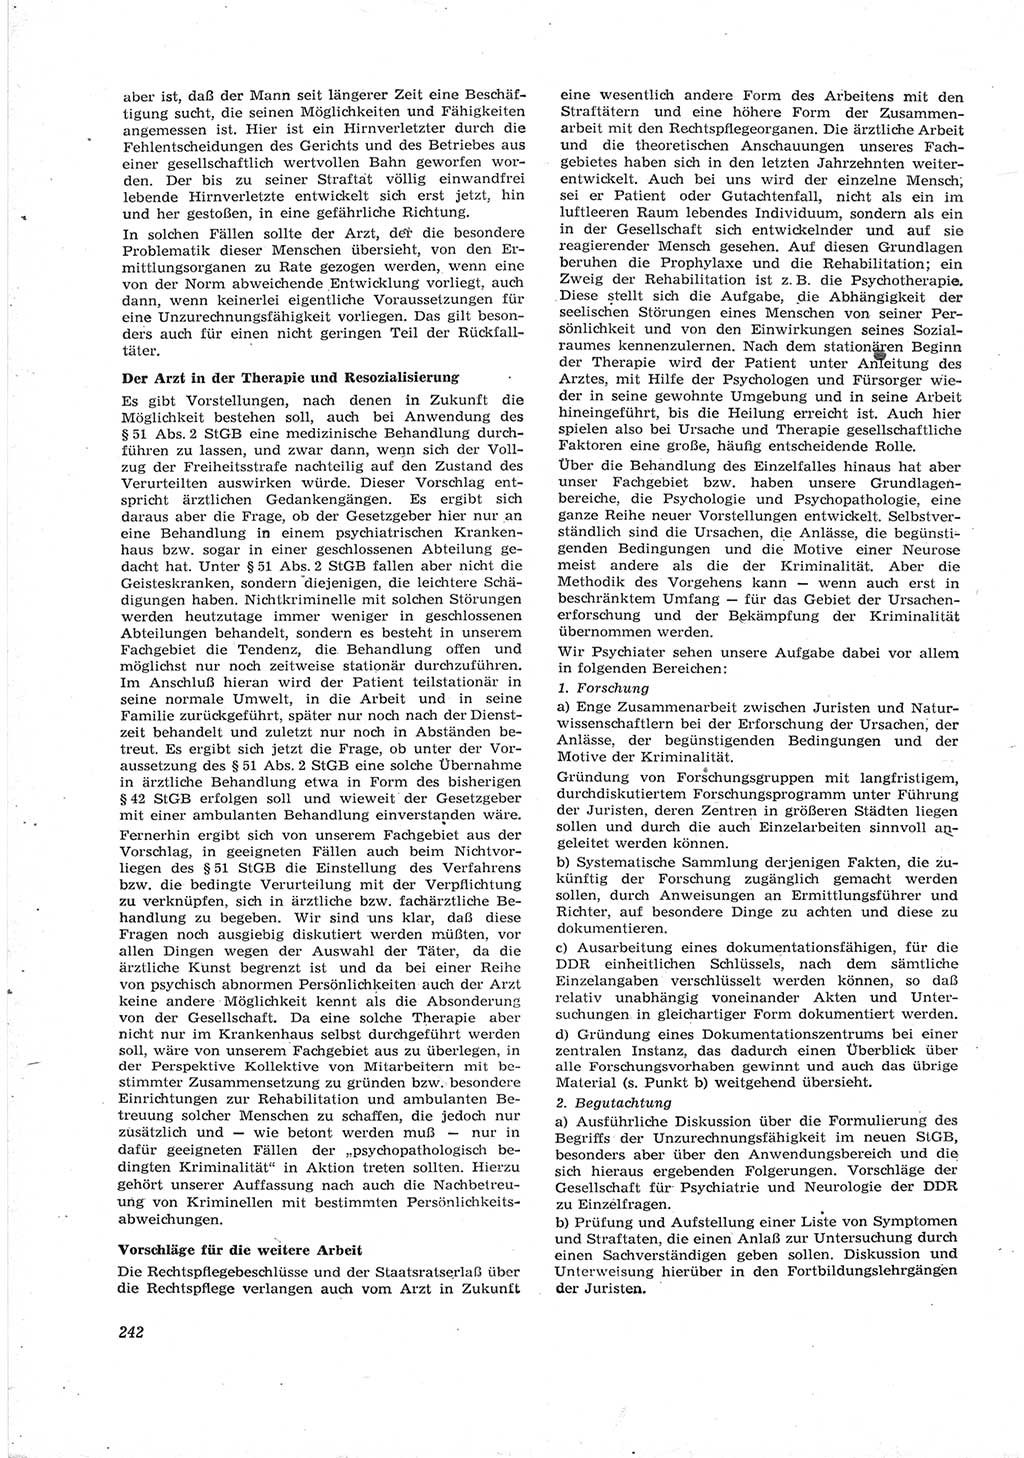 Neue Justiz (NJ), Zeitschrift für Recht und Rechtswissenschaft [Deutsche Demokratische Republik (DDR)], 17. Jahrgang 1963, Seite 242 (NJ DDR 1963, S. 242)